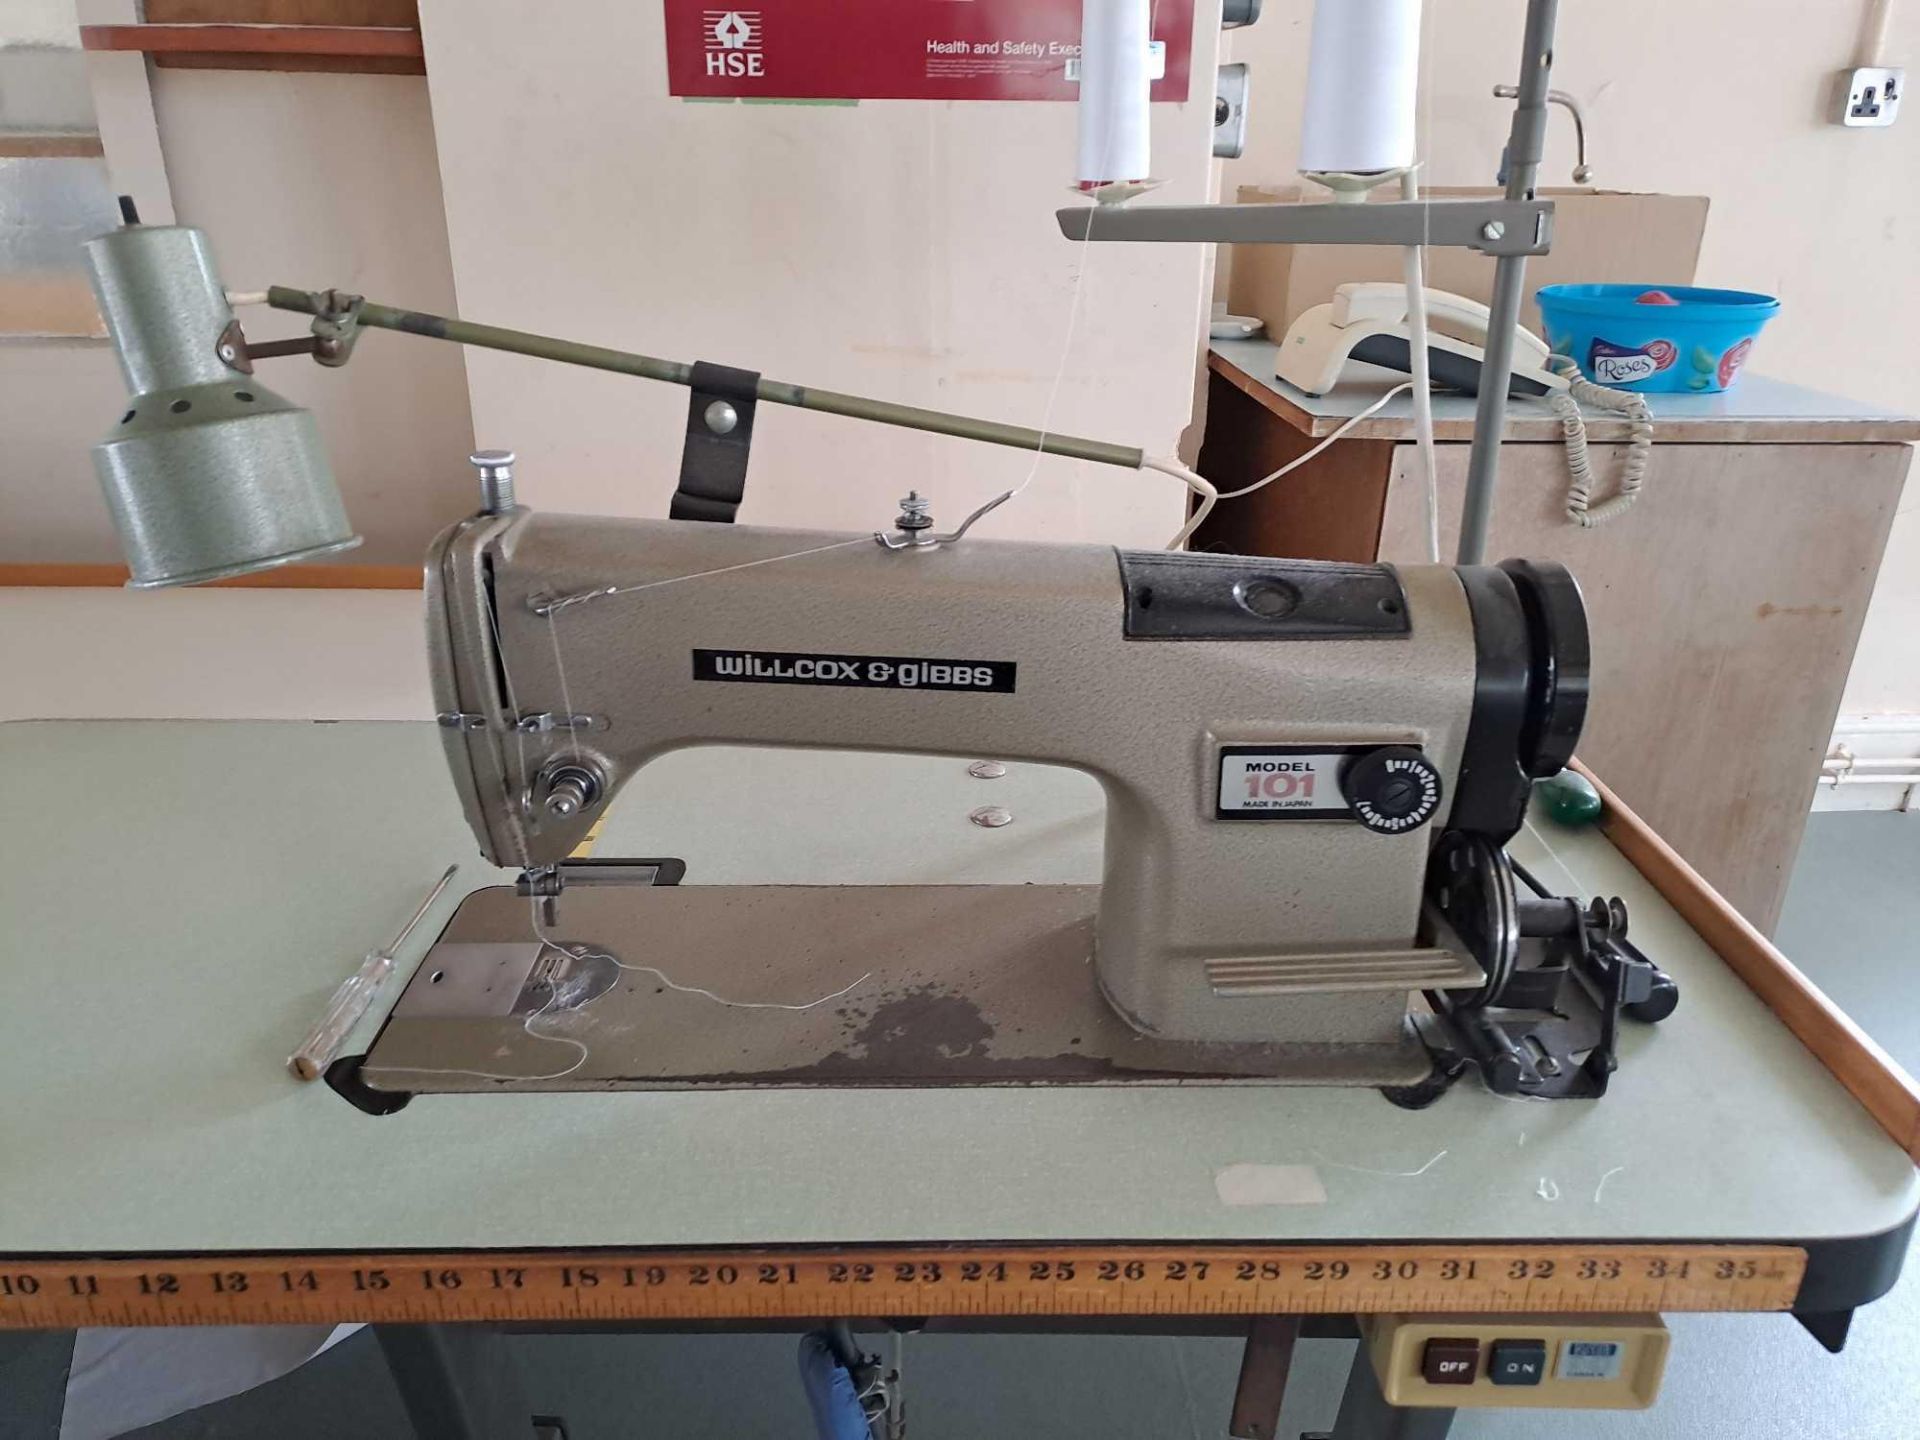 Willcox & Gibbs 101B Sewing Machine - Image 2 of 5